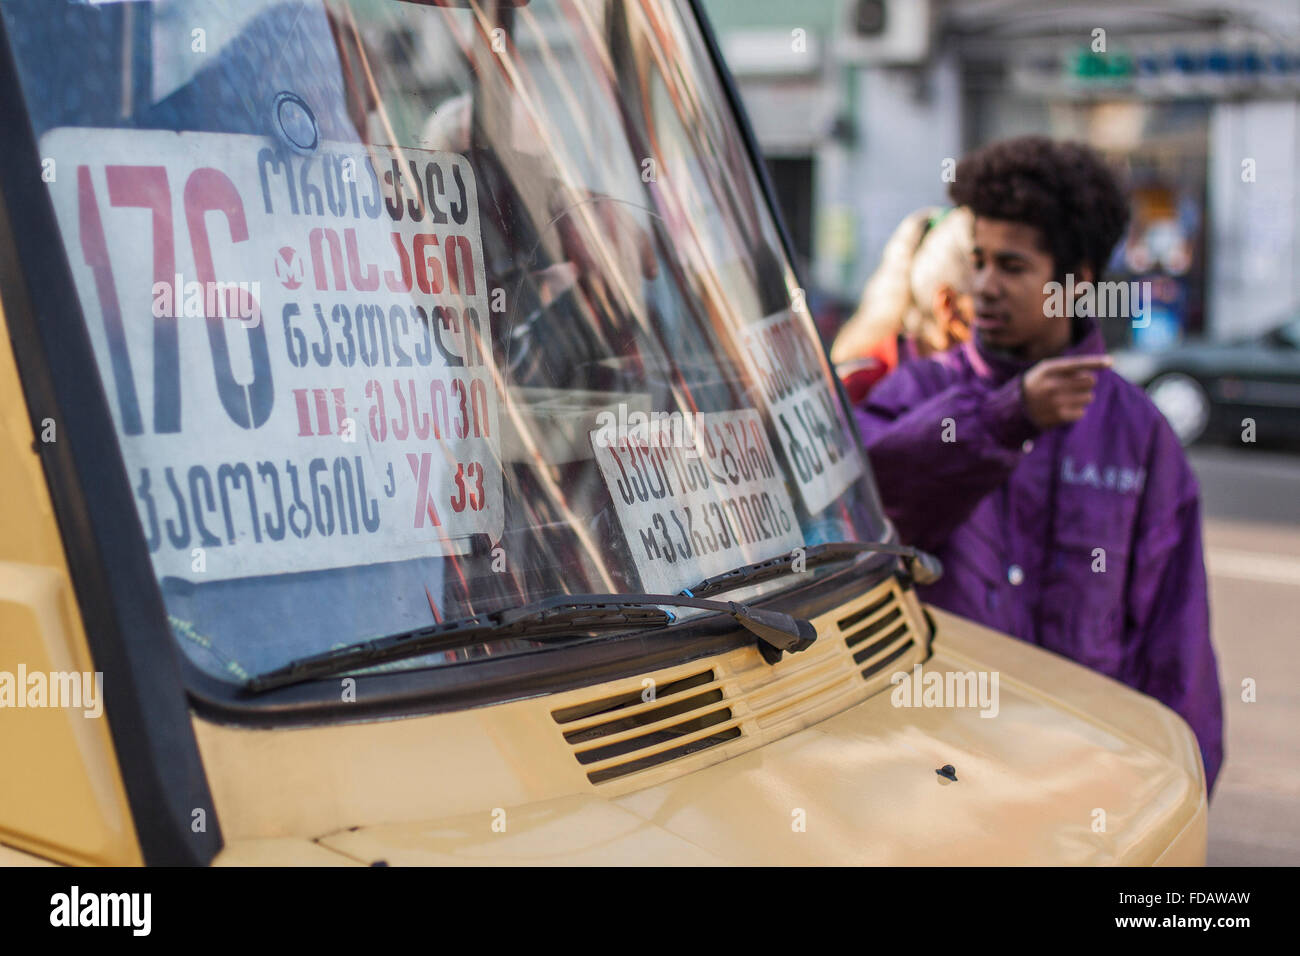 Marshrutka or mini bus in Tbilisi, Georgia. Stock Photo